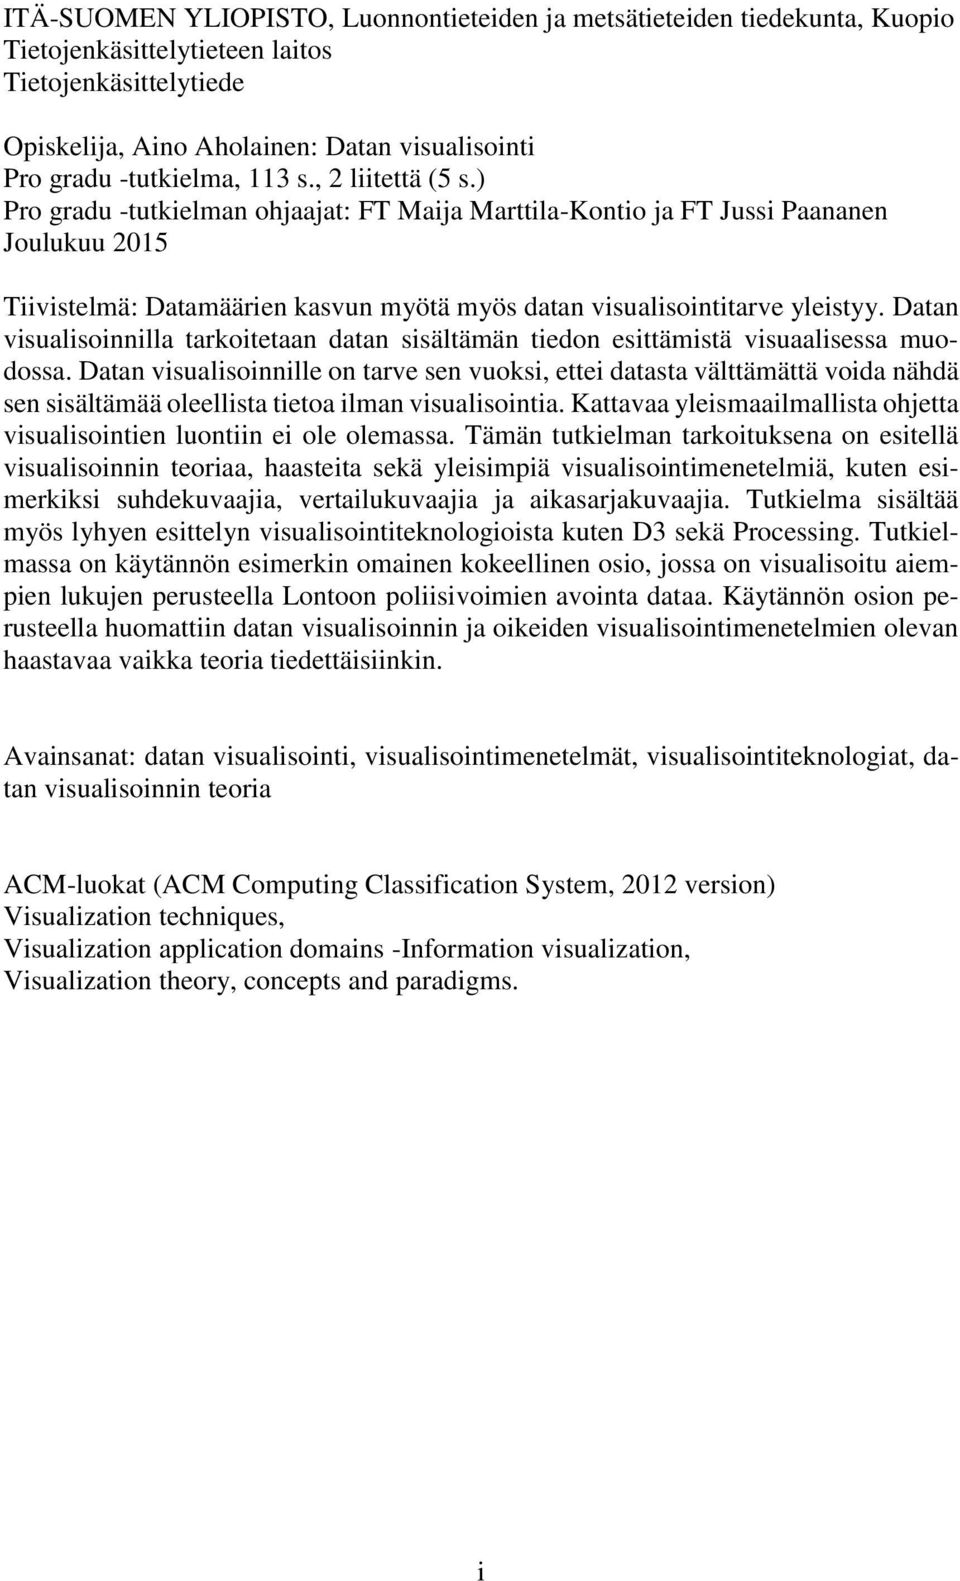 ) Pro gradu -tutkielman ohjaajat: FT Maija Marttila-Kontio ja FT Jussi Paananen Joulukuu 2015 Tiivistelmä: Datamäärien kasvun myötä myös datan visualisointitarve yleistyy.